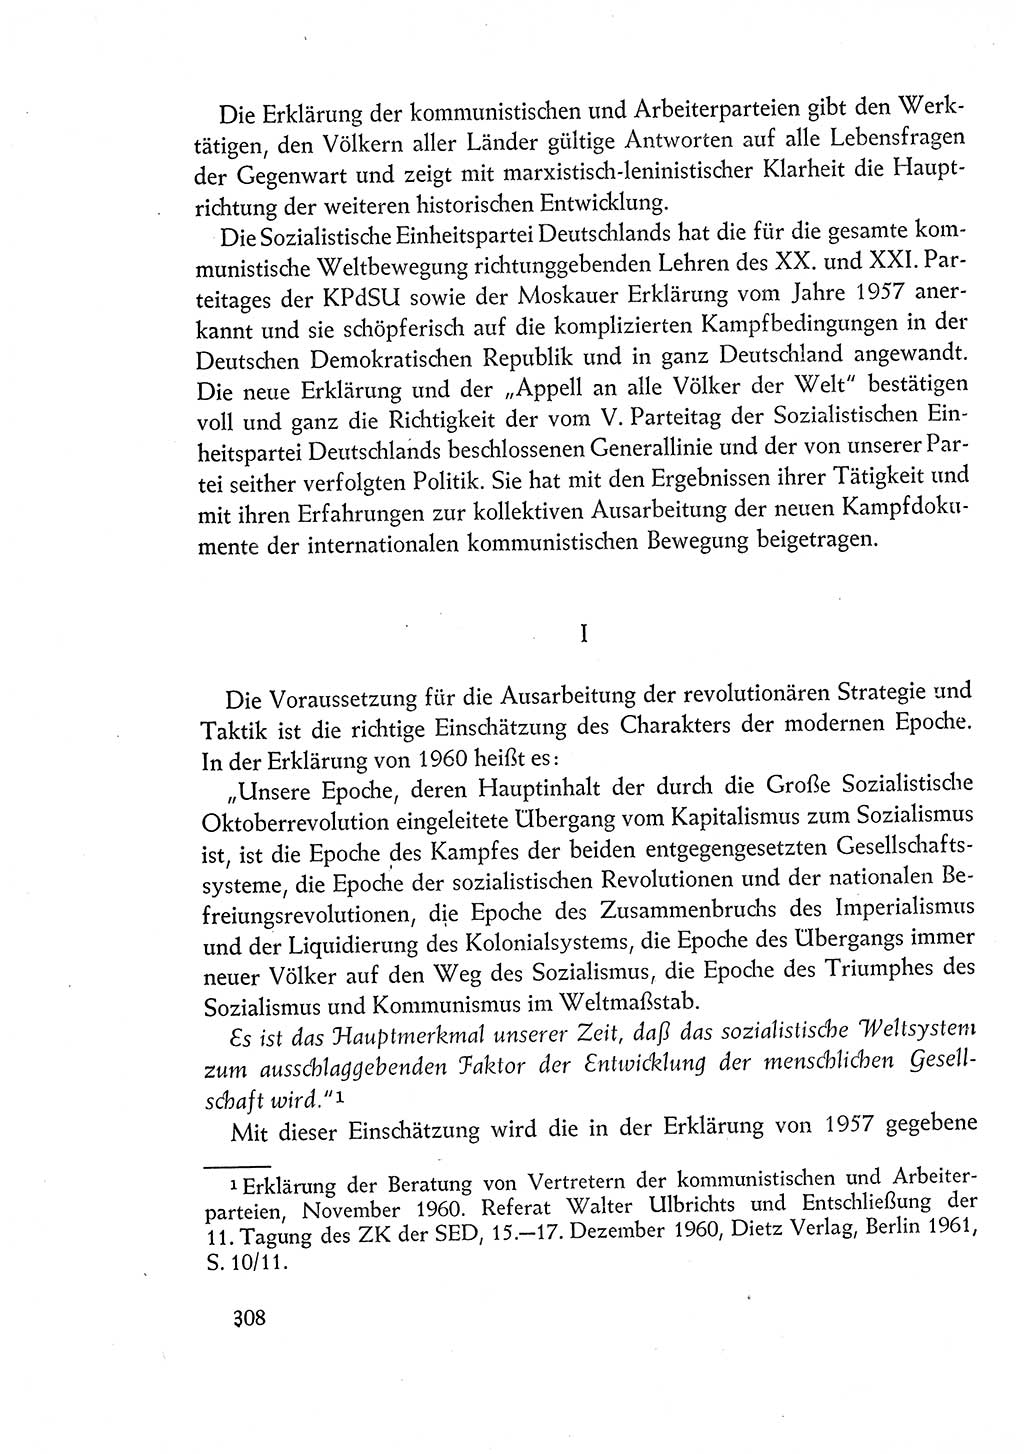 Dokumente der Sozialistischen Einheitspartei Deutschlands (SED) [Deutsche Demokratische Republik (DDR)] 1960-1961, Seite 308 (Dok. SED DDR 1960-1961, S. 308)